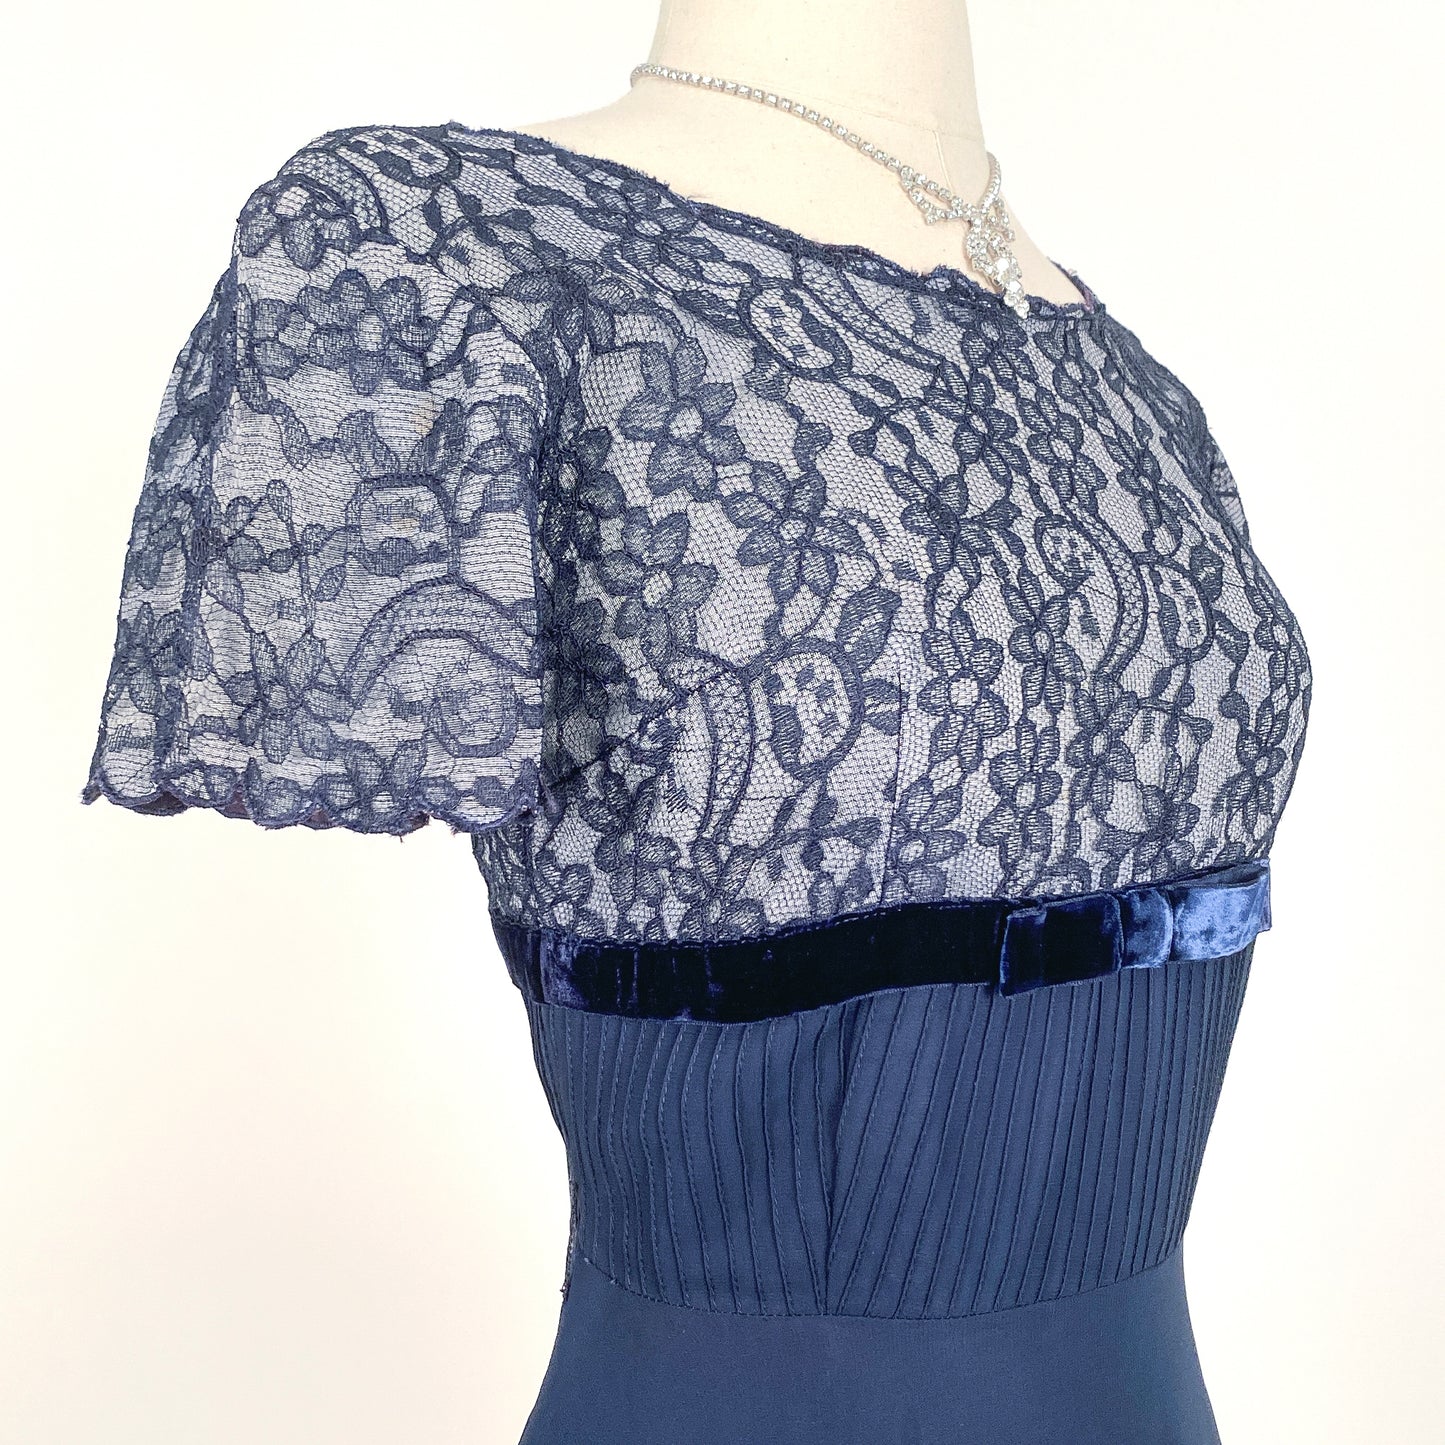 1950s Navy Lace and Chiffon Dress / Waist 26